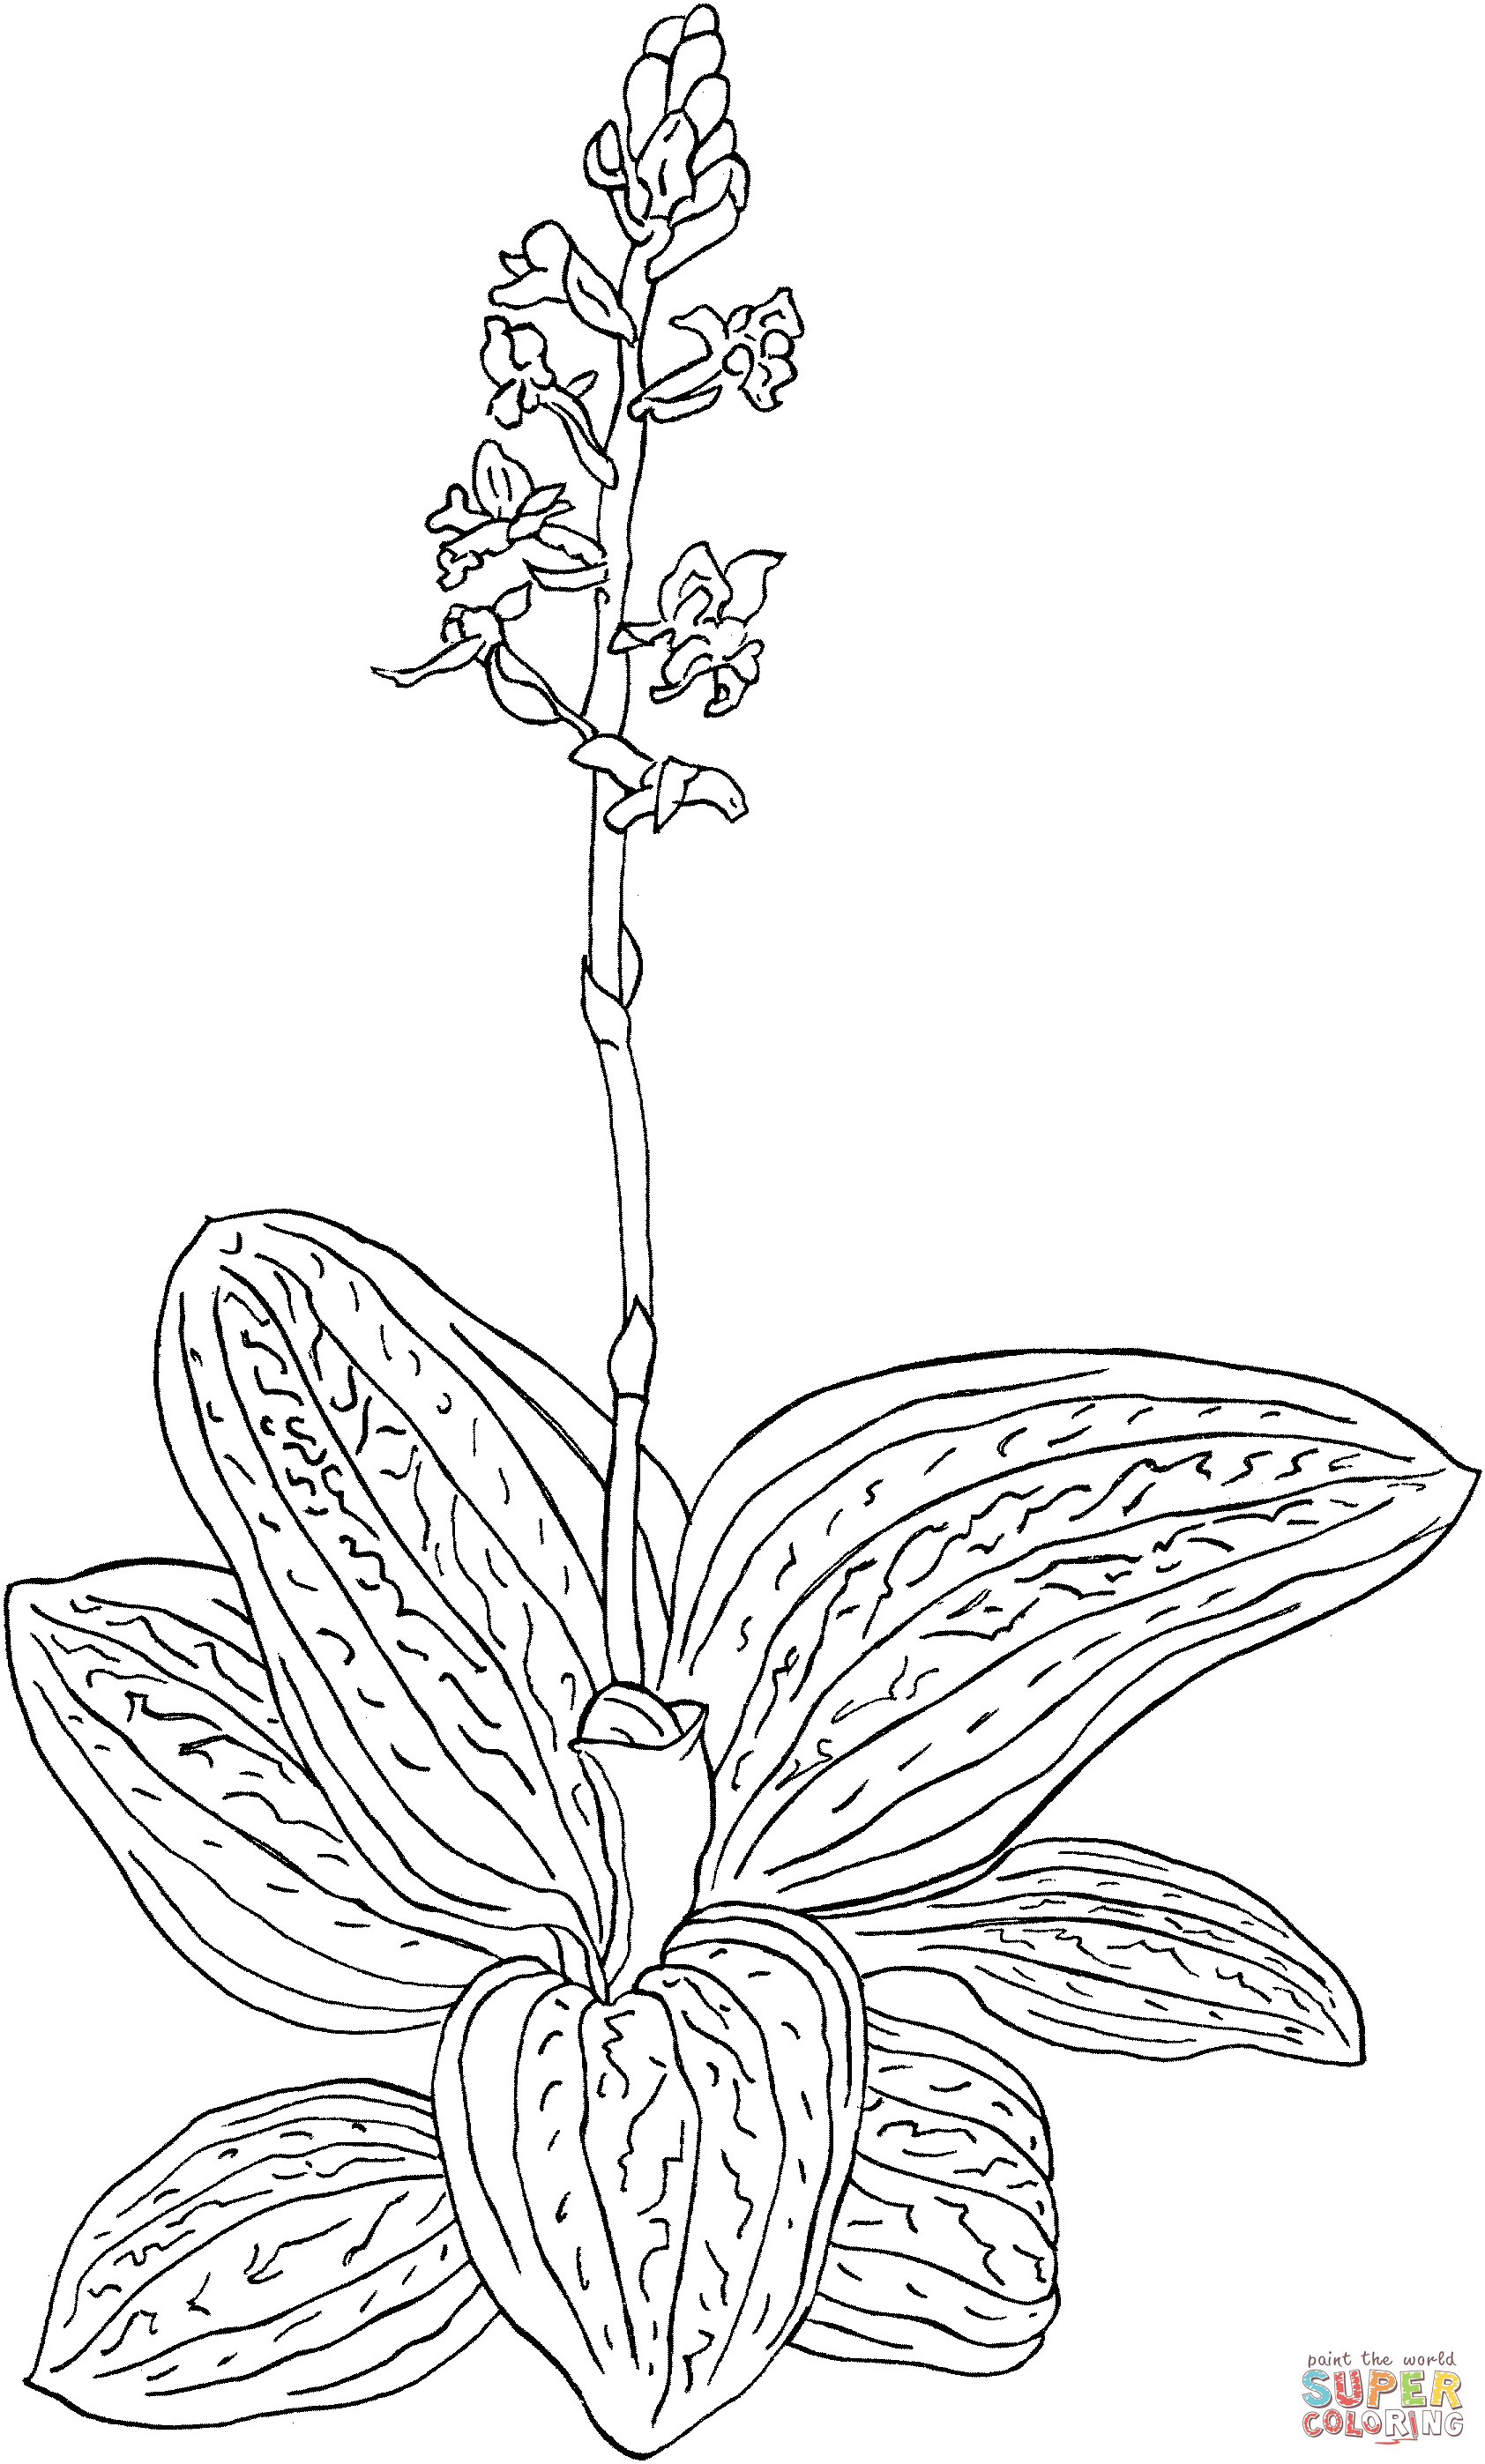 Ludisia Discolor ou Black Jewel Orchid de Orquídea